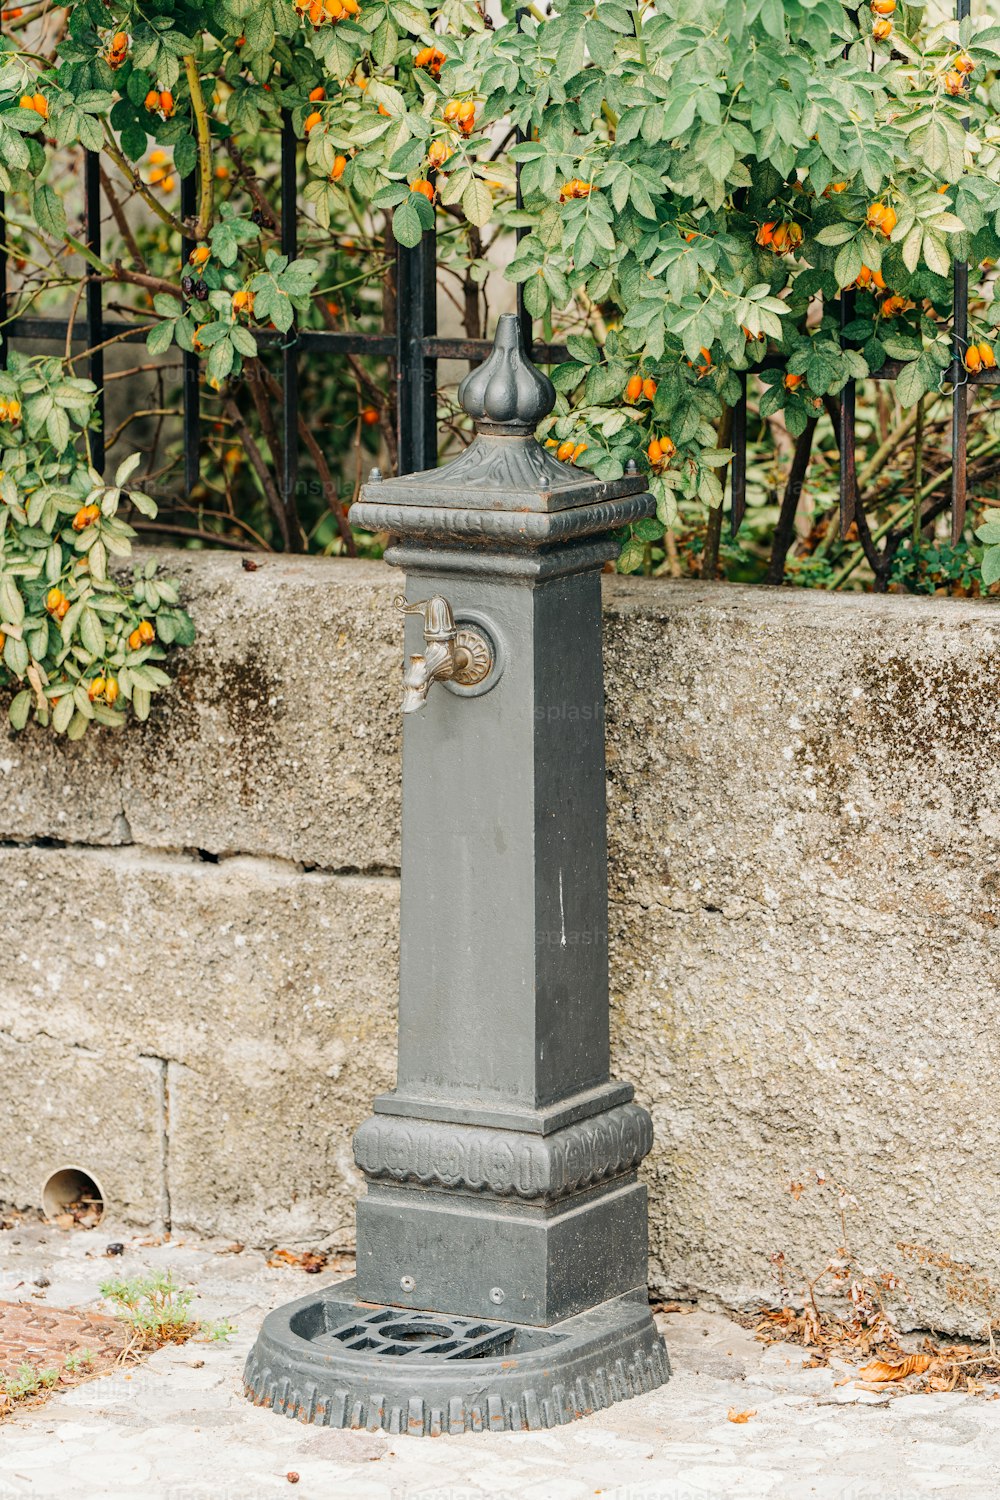 Ein grauer Hydrant am Straßenrand